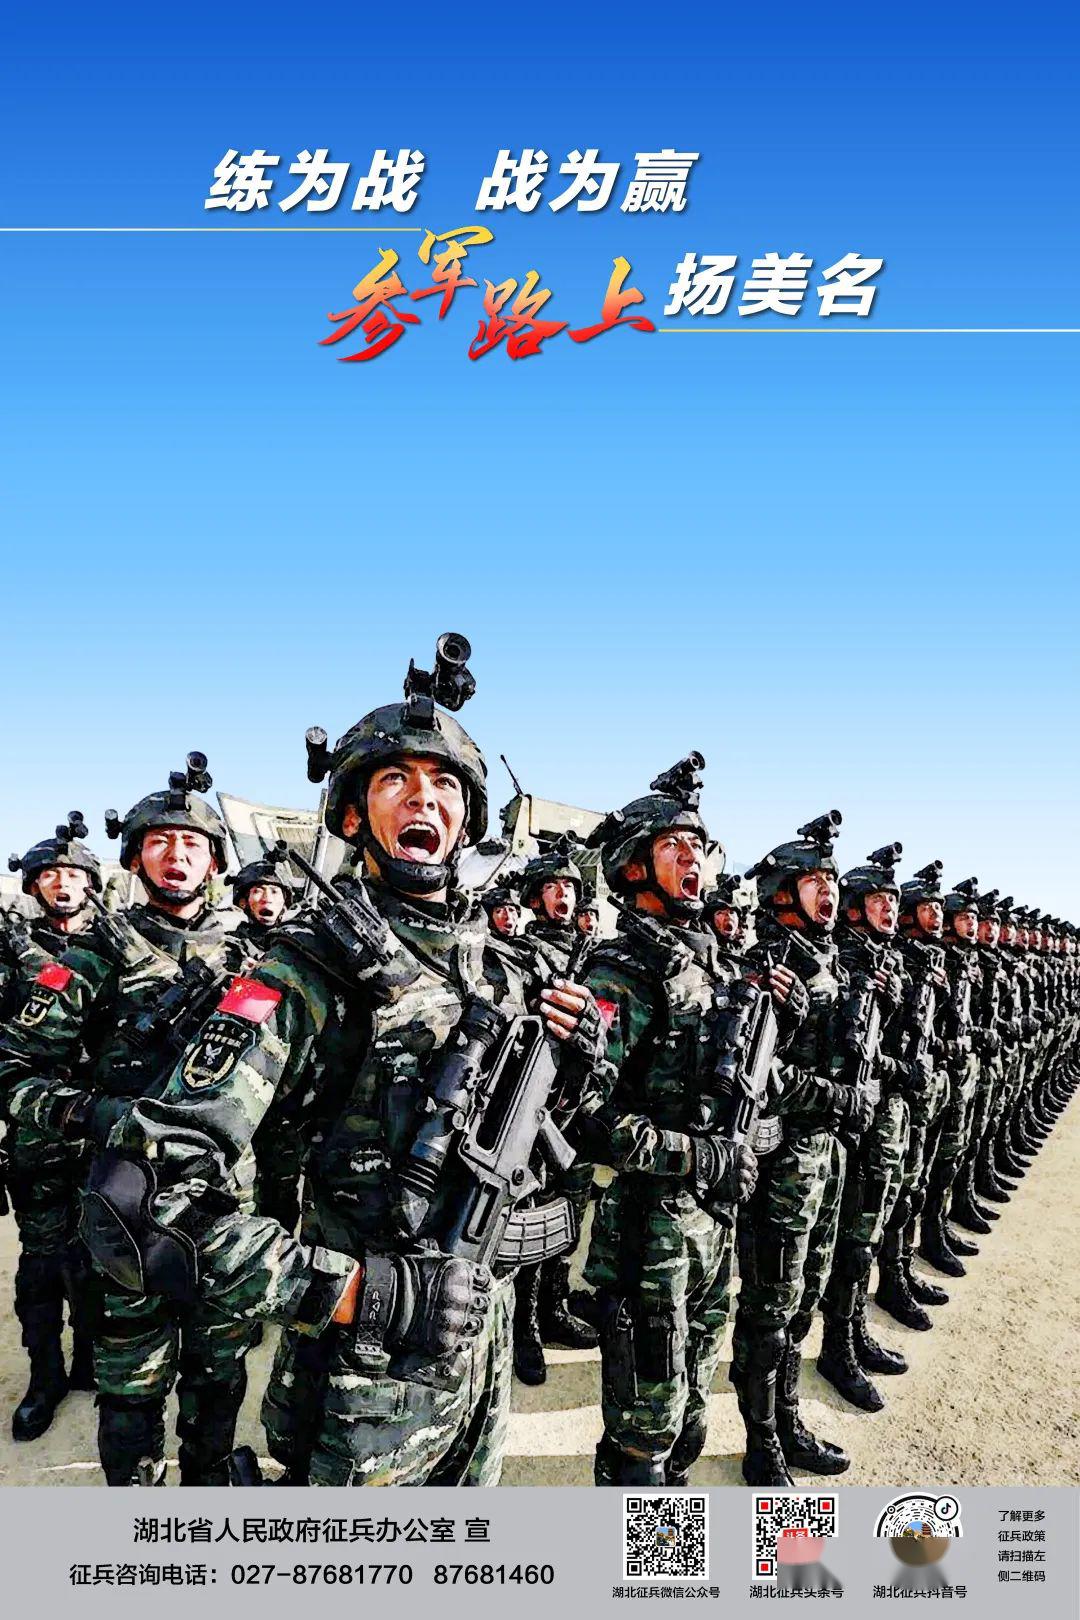 超燃2020年湖北省征兵宣传海报来袭喊你参军啦